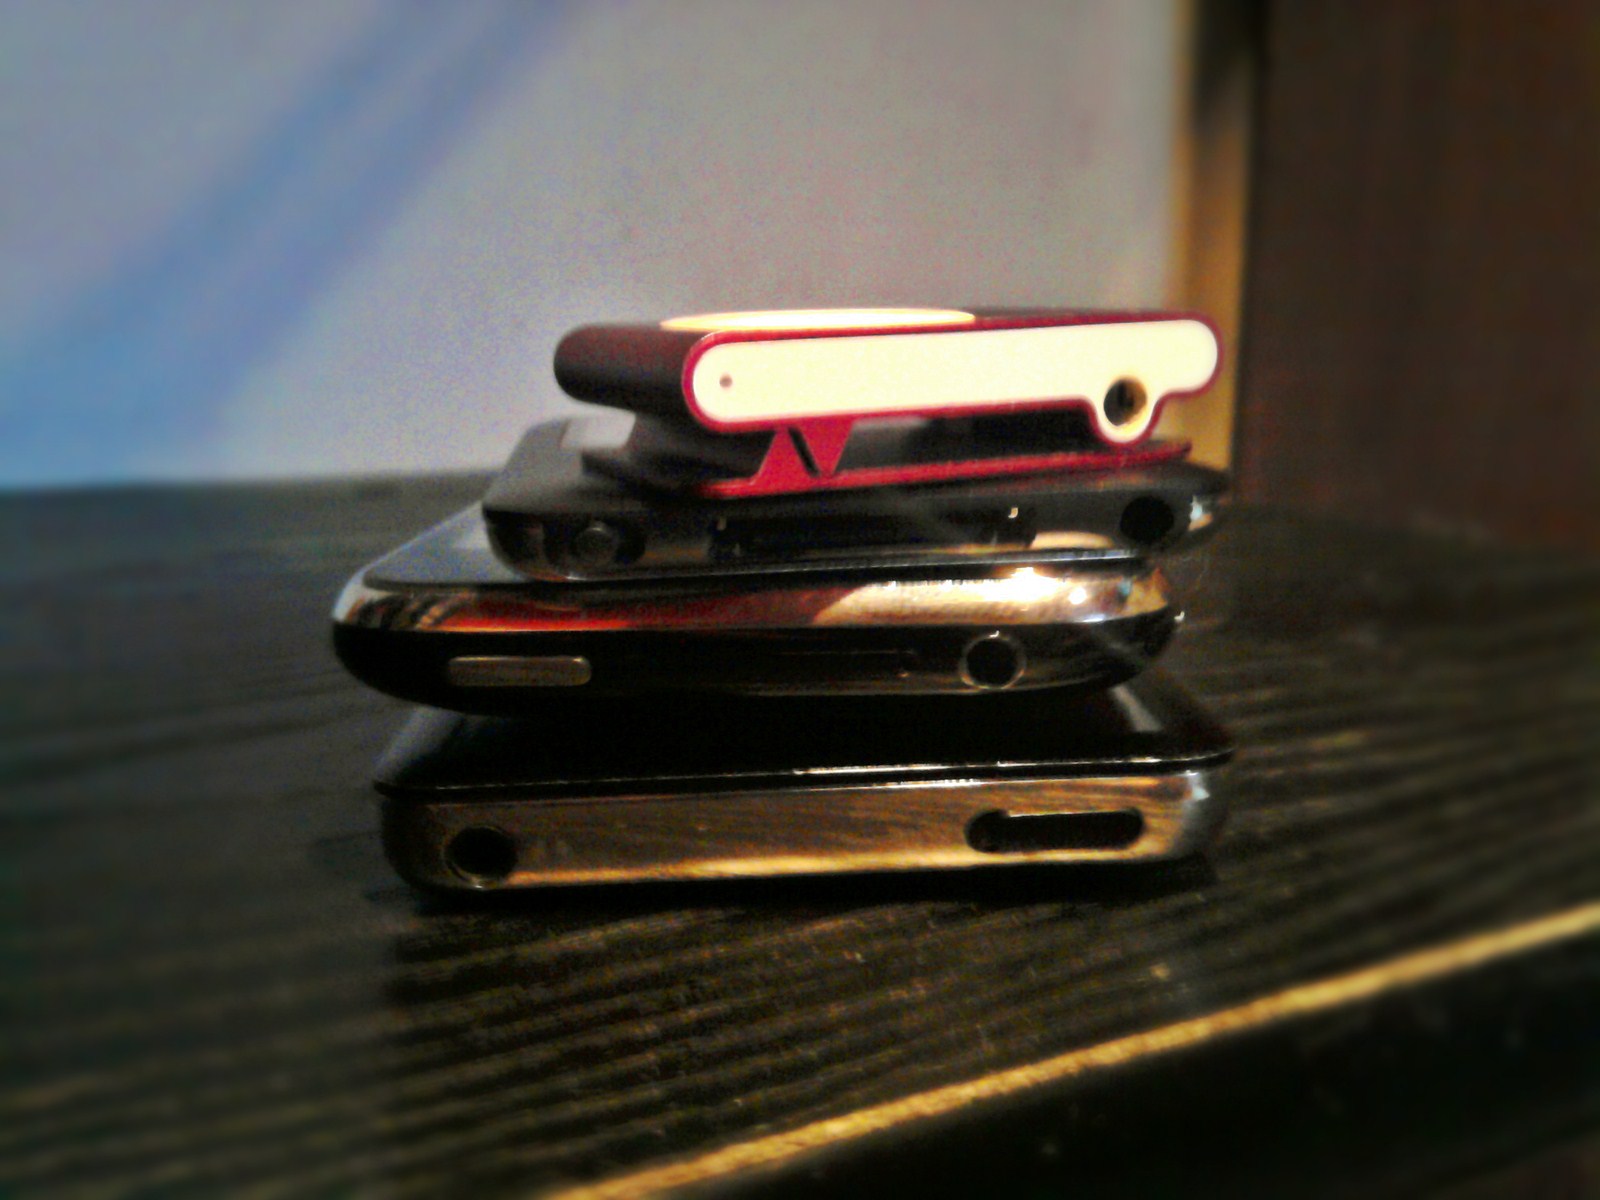 iPod family